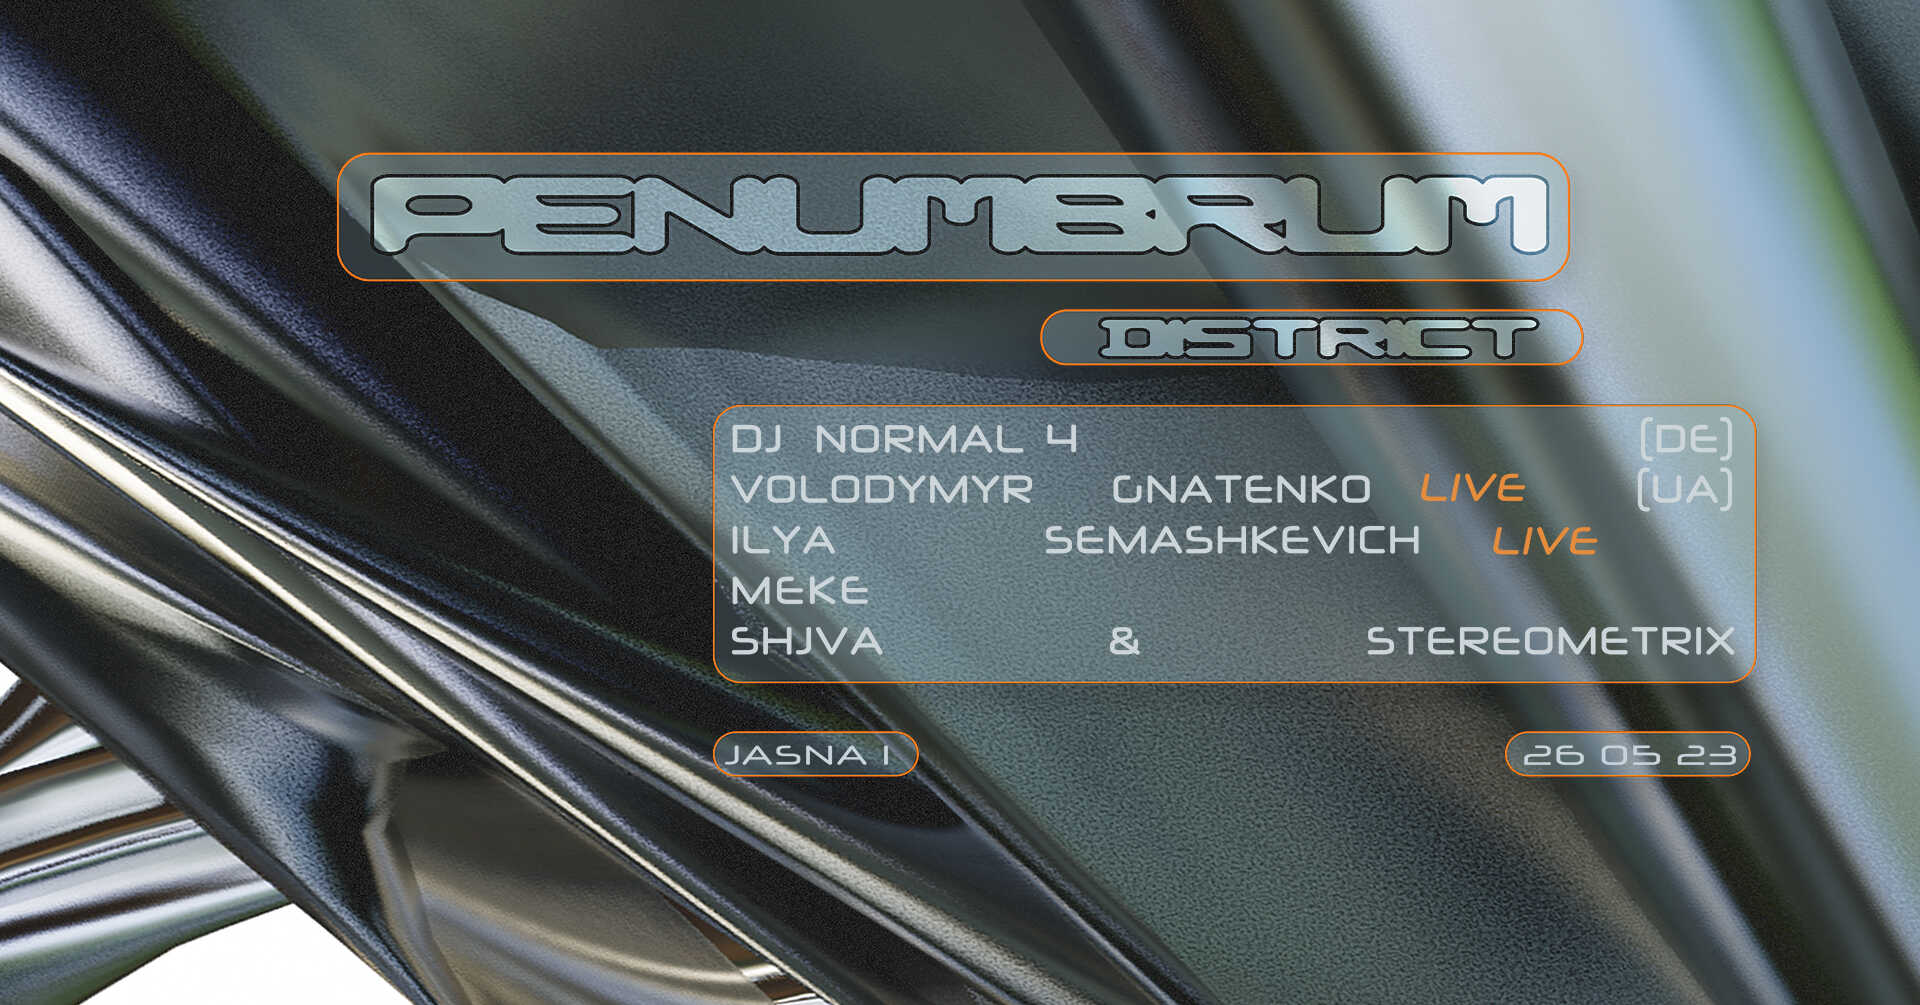 J1 | penumbrum: DJ Normal 4, Ilya Semashkevich, Meke / Volodymyr Gnatenko, stereometrix, shjva